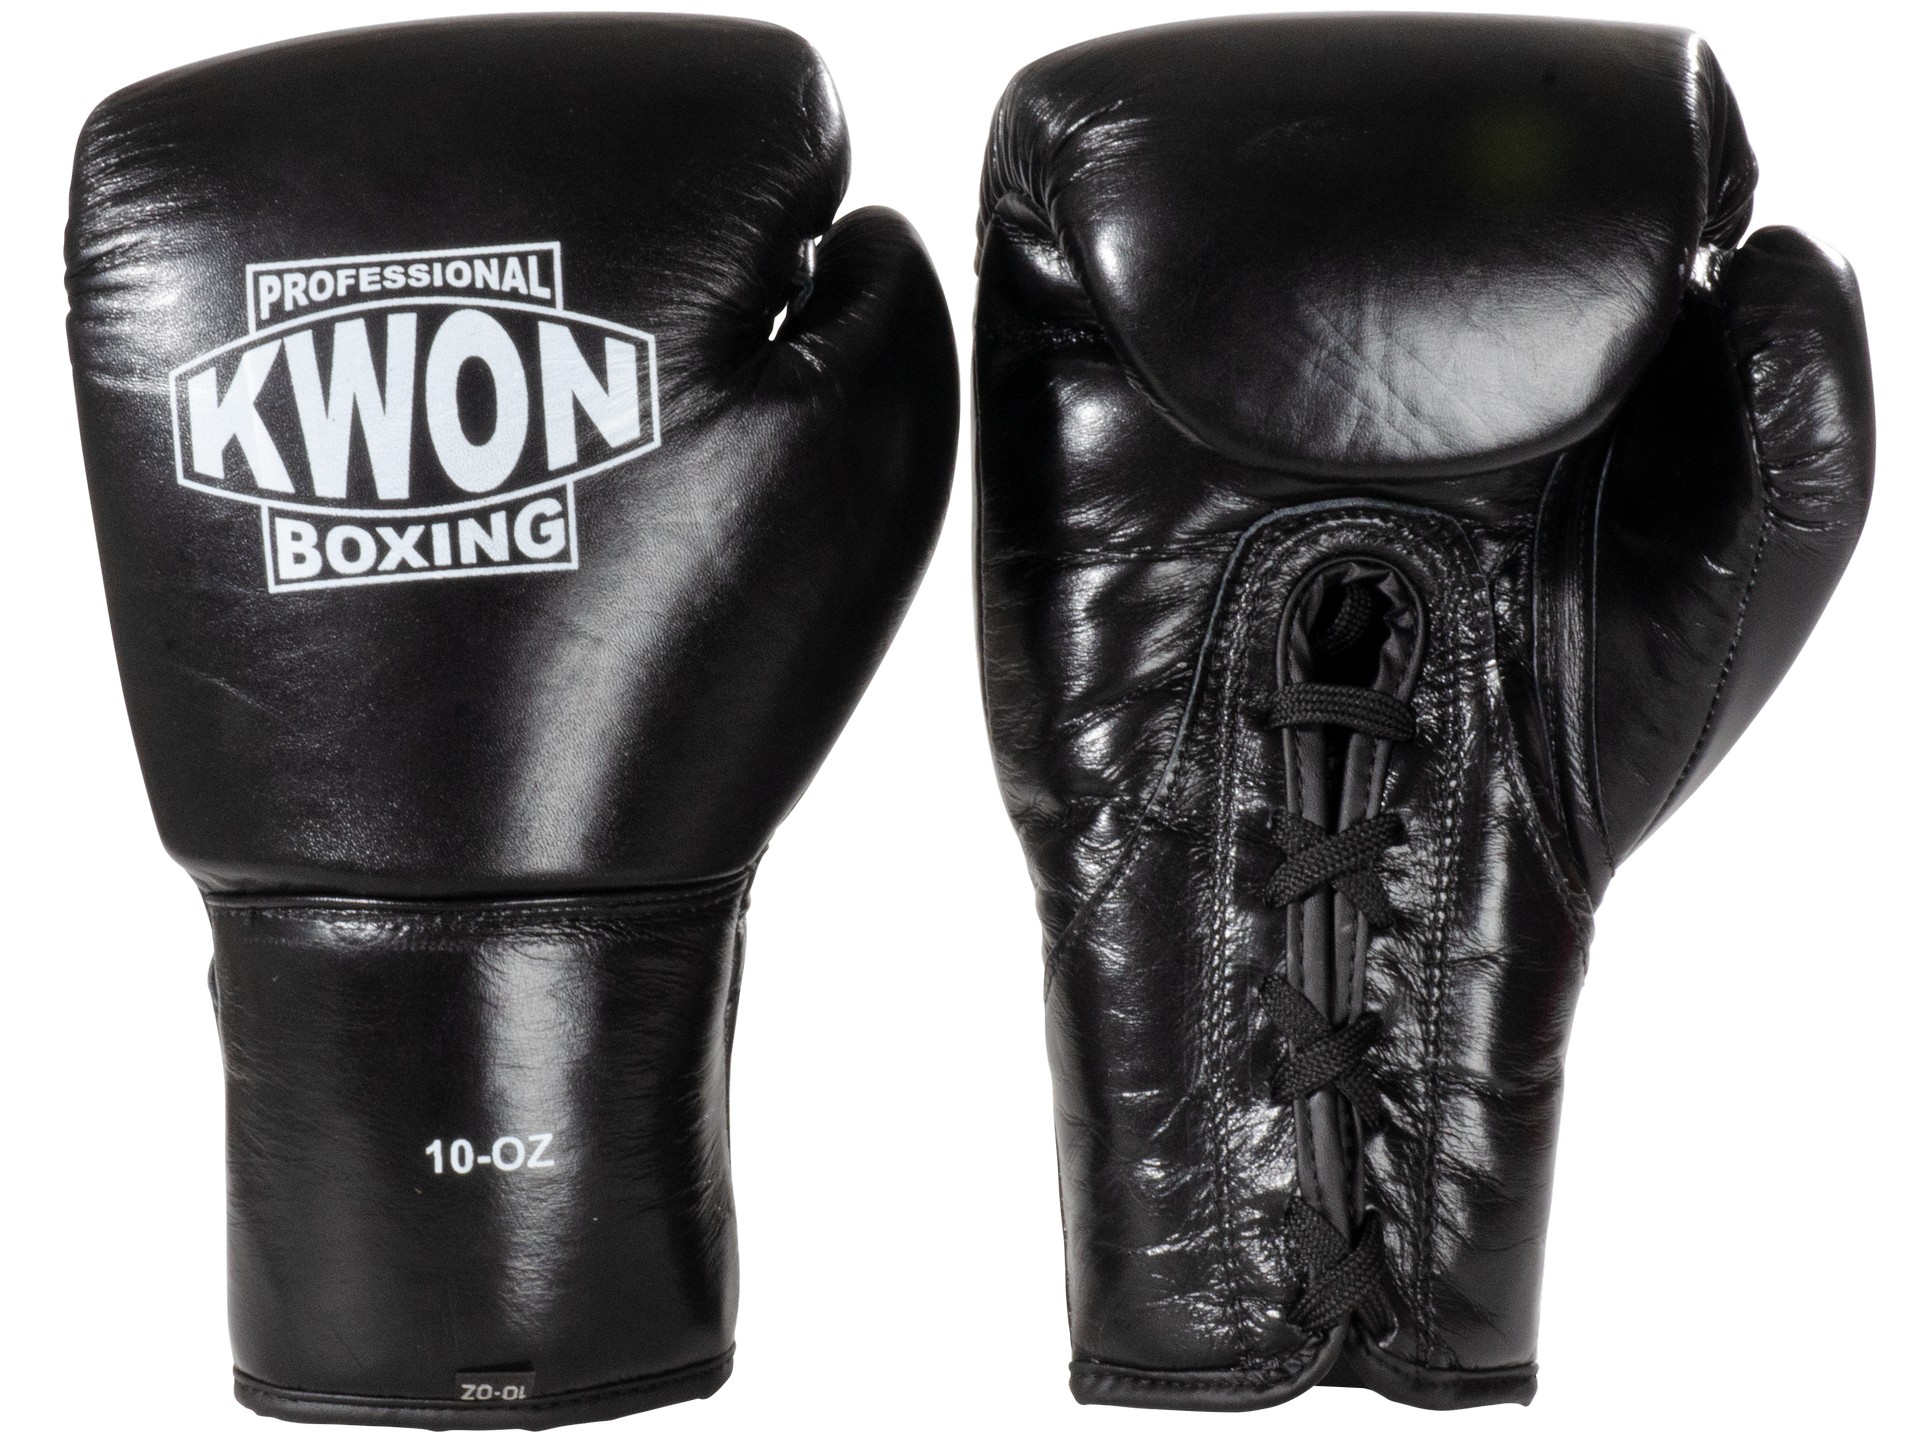 KWON PROFESSIONAL BOXING Leder Boxhandschuhe Tournament 8 oz |10